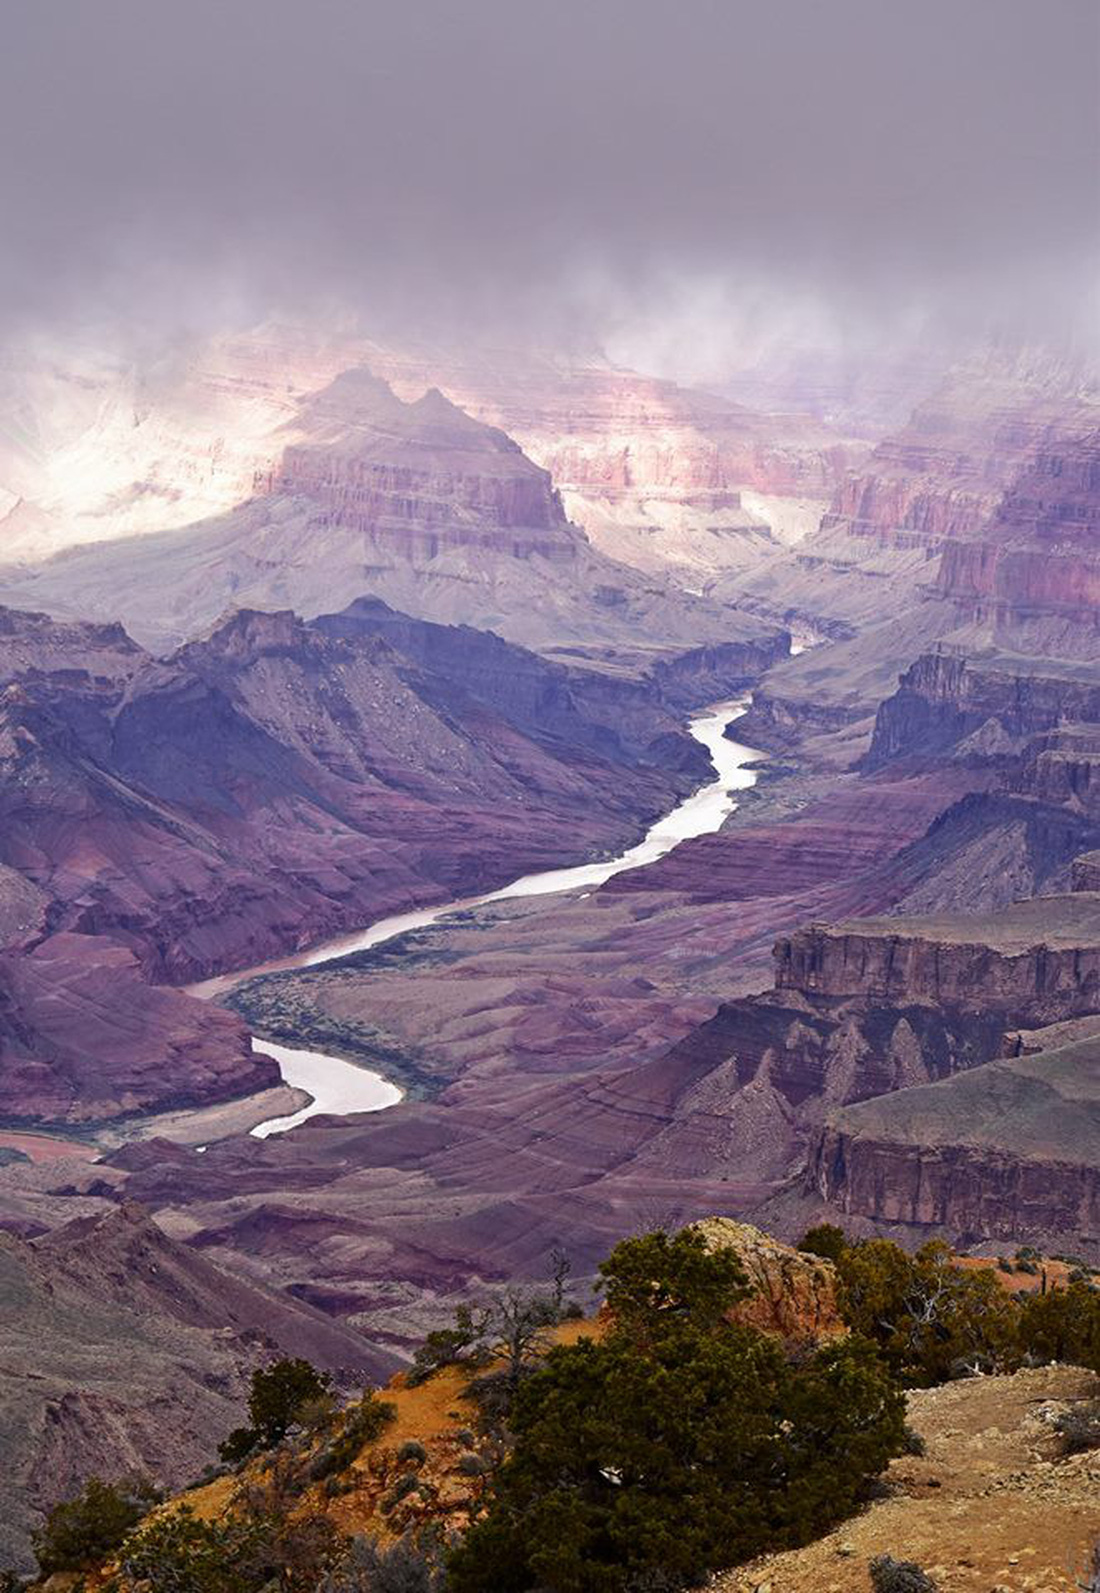 Kỳ quan Grand Canyon tráng lệ mùa tuyết rơi - Ảnh 4.